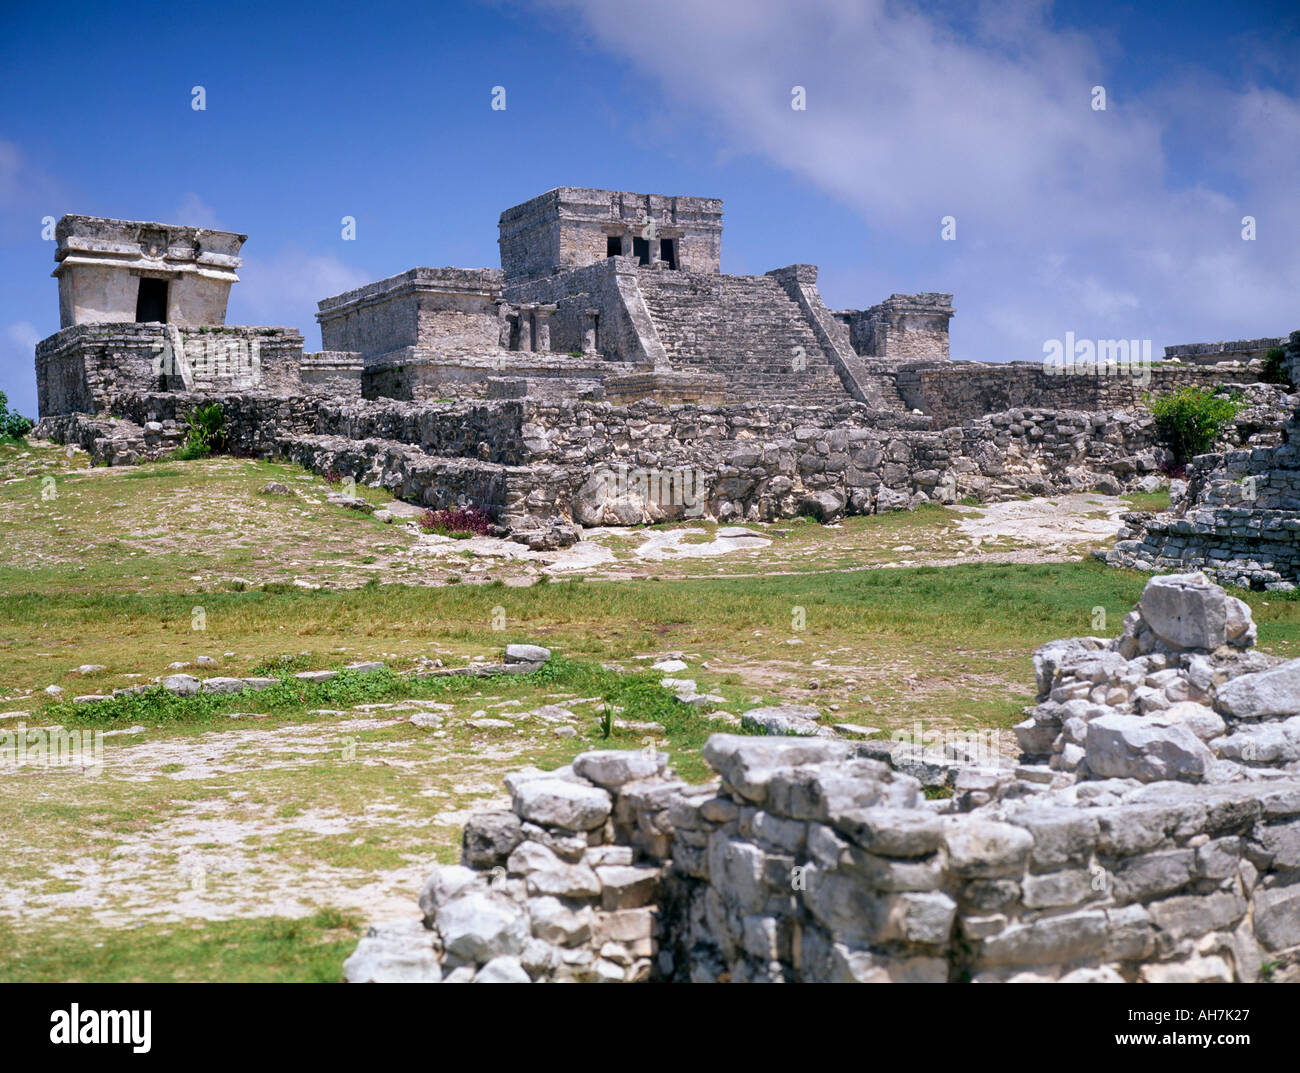 Site archéologique maya Yucatan Tulum Mexique Amérique du Nord Banque D'Images